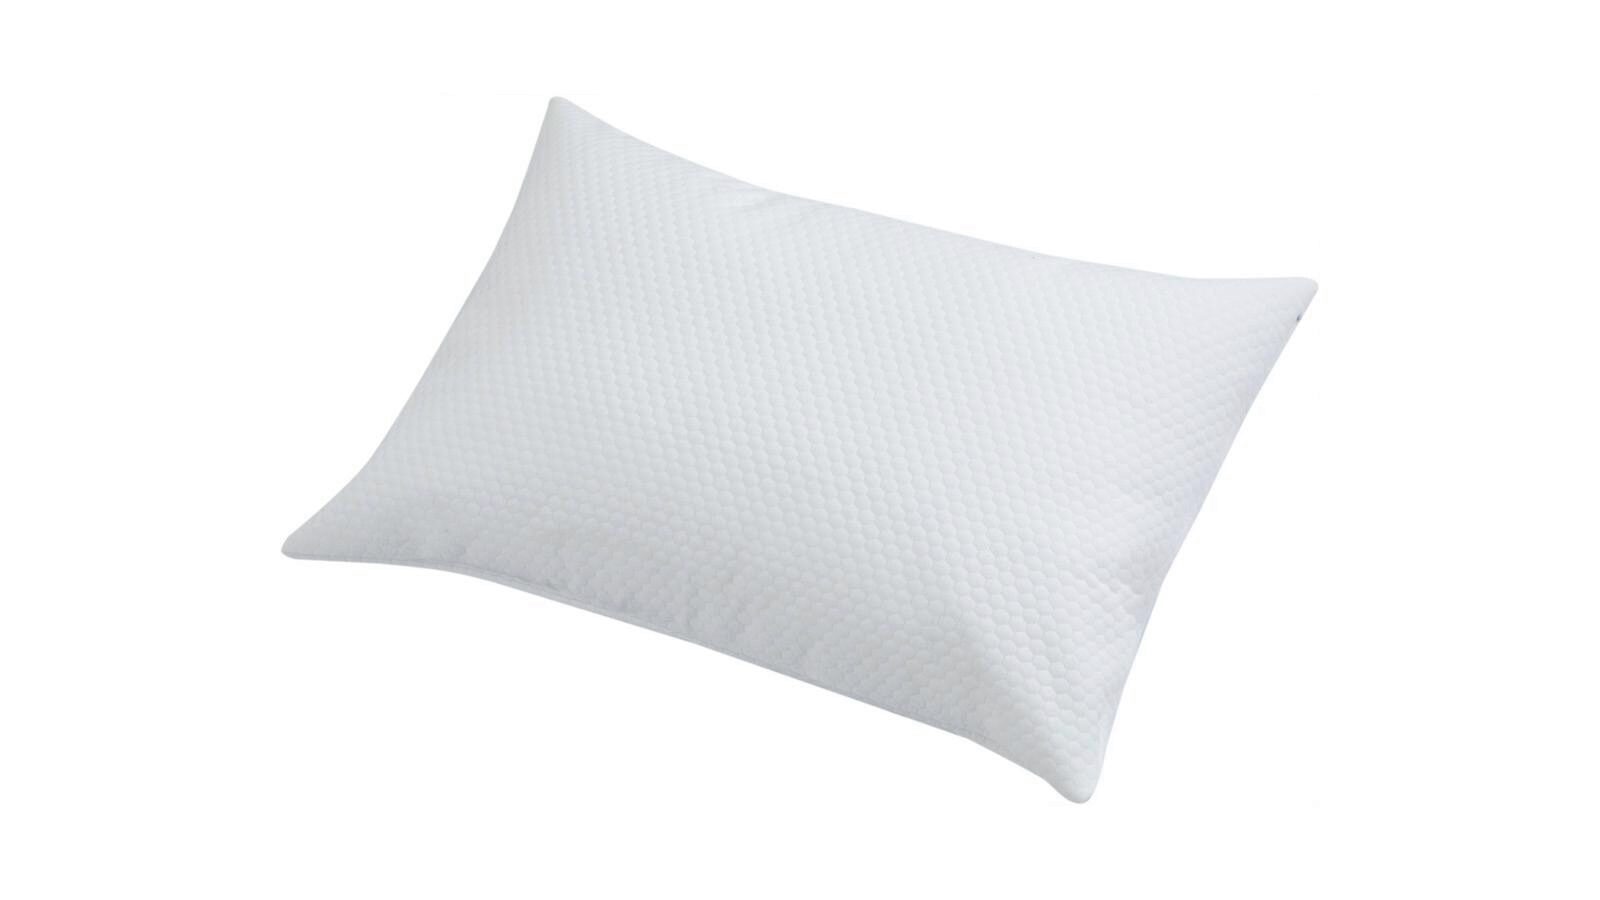 Чехол для подушки Clima-Dry дешевый водонепроницаемый чехол для автокресла универсальная кожаная подушка переднего сиденья с подушками или без подушки